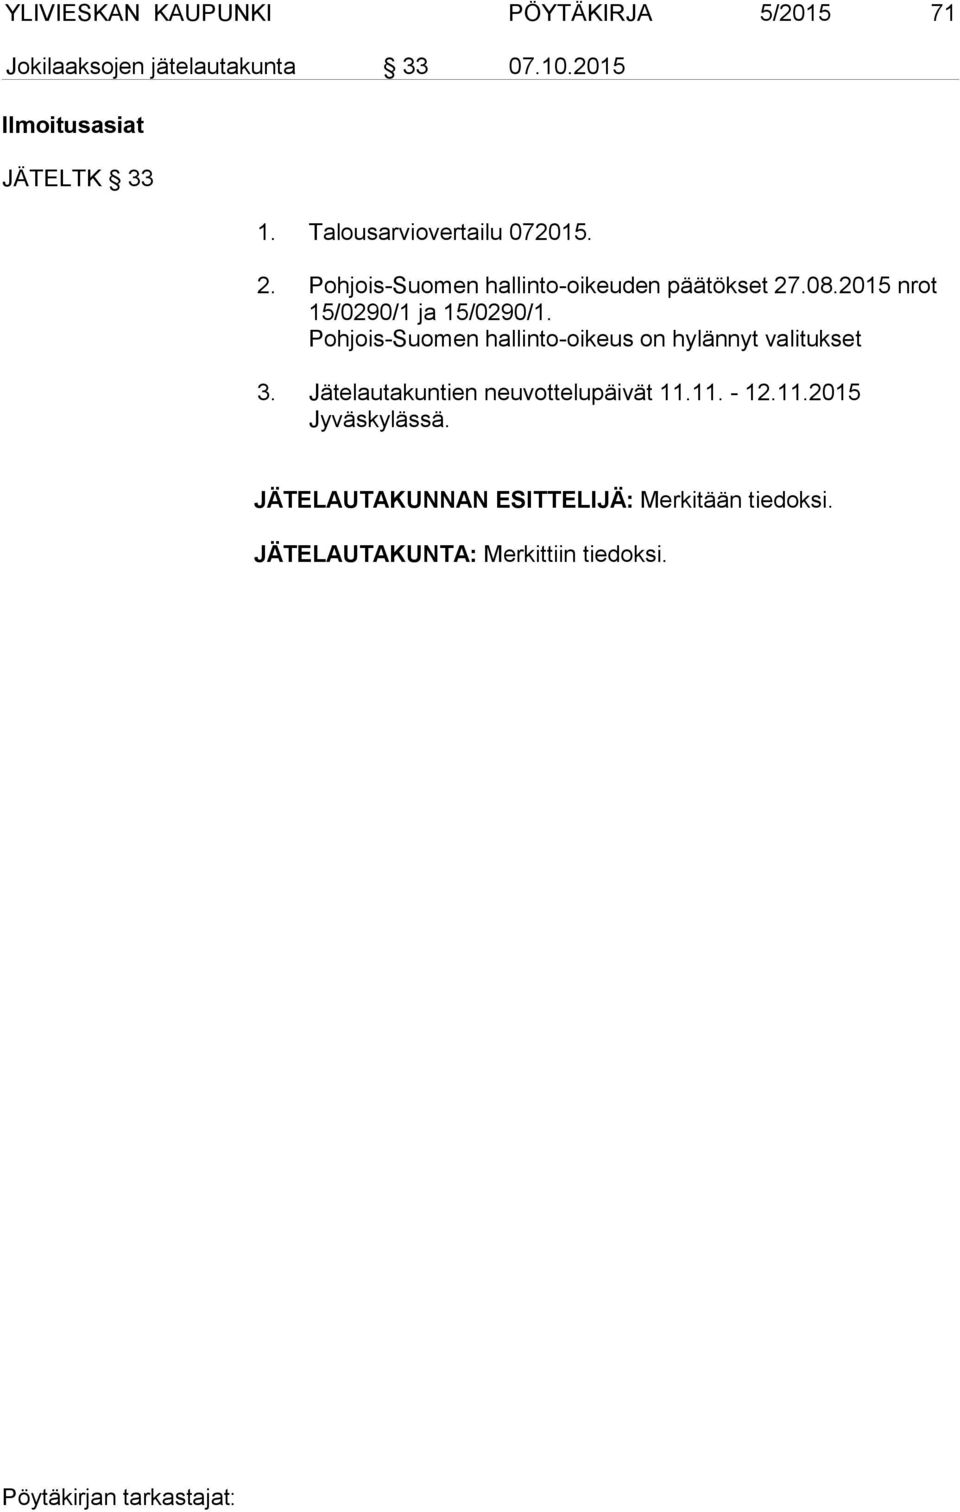 Pohjois-Suomen hallinto-oikeuden päätökset 27.08.2015 nrot 15/0290/1 ja 15/0290/1.